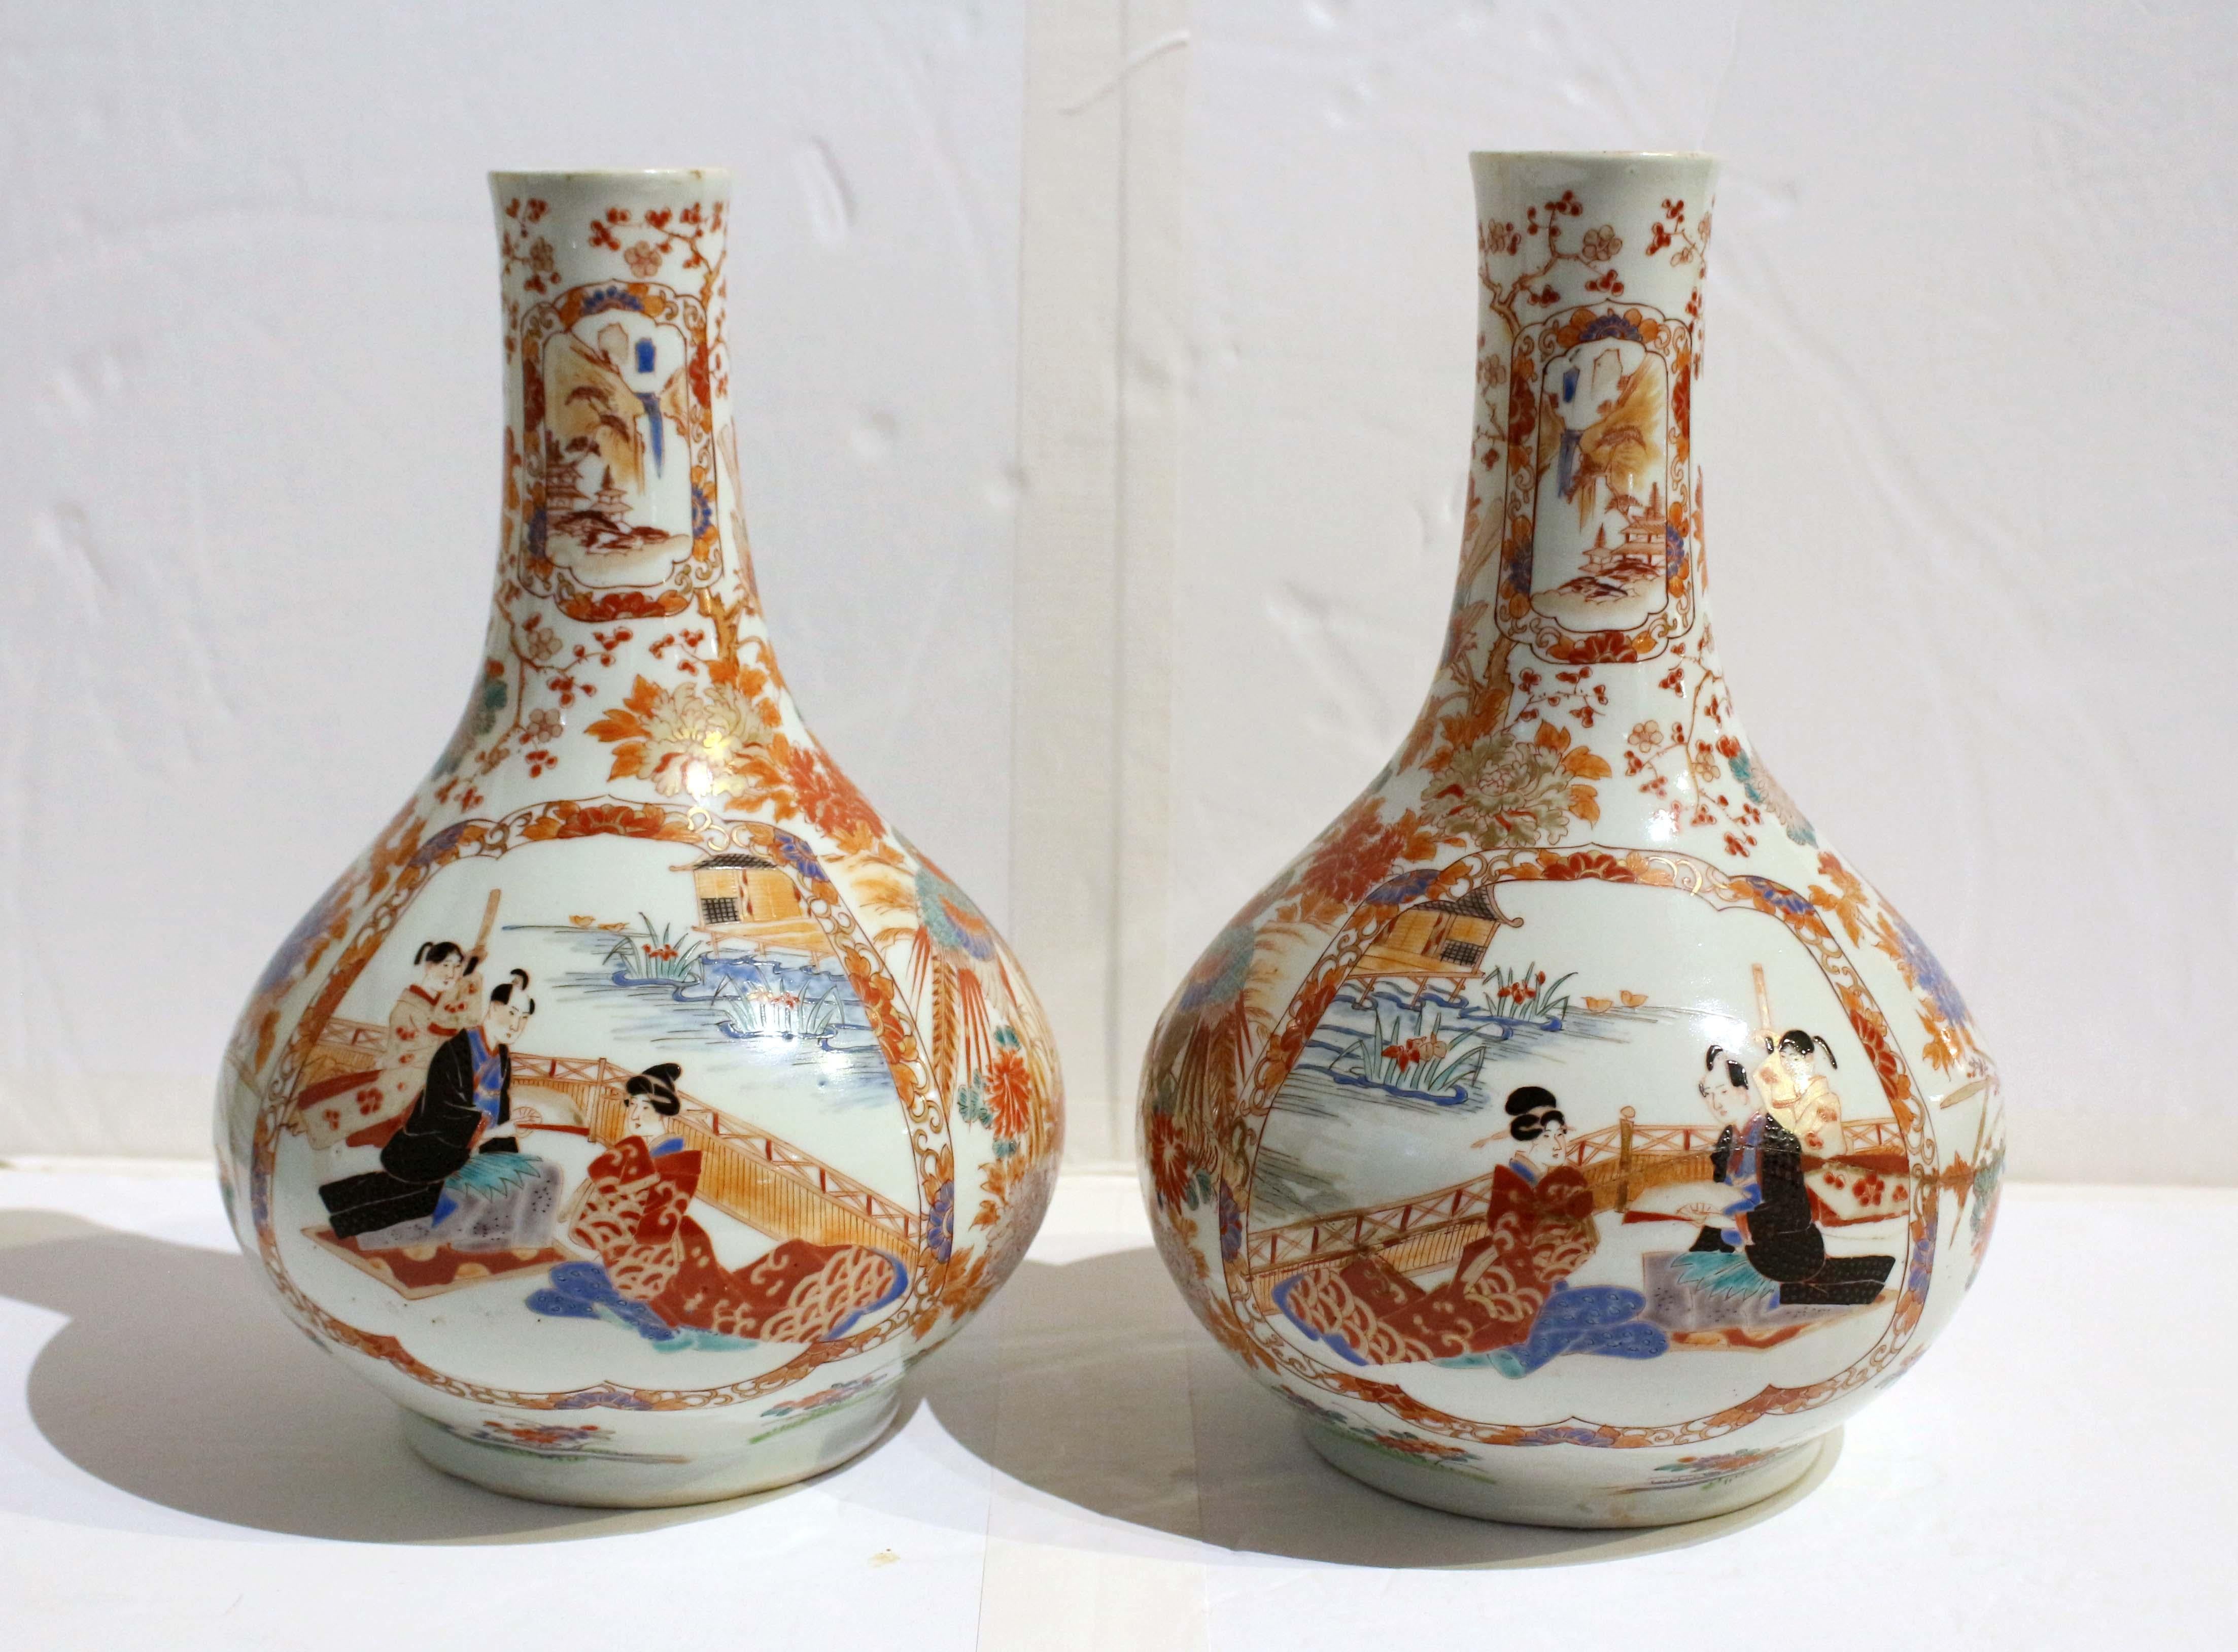 CIRCA 1890 Paar Imari-Vasen, japanisch. Knollige Form. Ein echtes Gesichterpaar. Jeweils mit großen, einander gegenüberliegenden Zentralmedaillons, die einen Mann mit Fächer und dahinter einen Gehilfen mit umgeschlagenem Schwert sowie eine sitzende